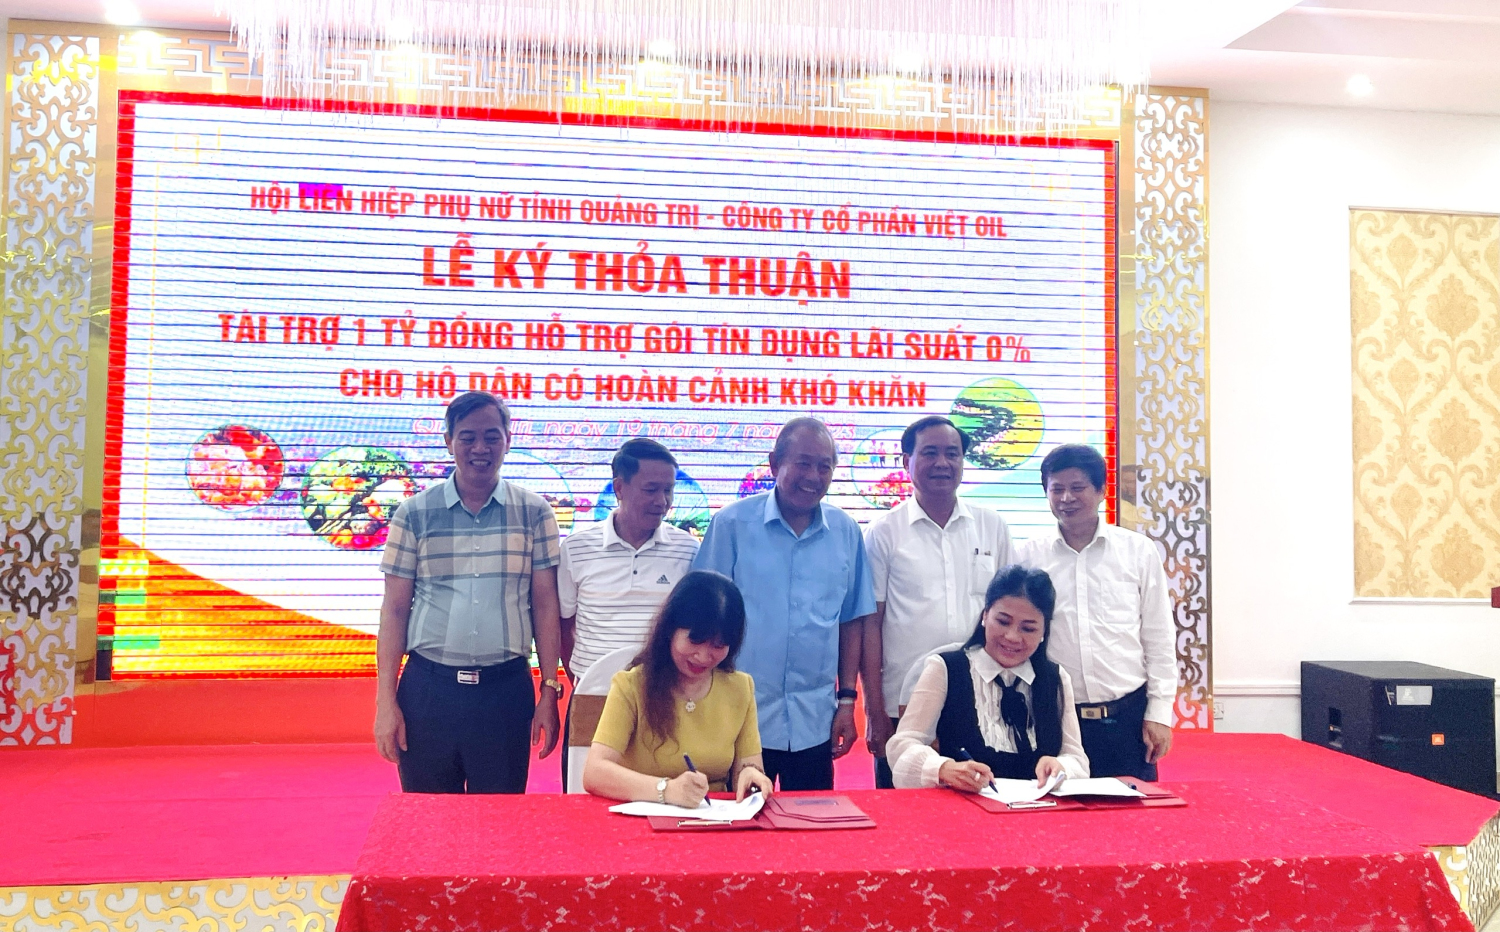 Lễ kí kết giữa Hội Phụ nữ tỉnh Quảng Trị và Công ty TNHH TM Vận tải và Du lịch Xuyên Việt Oil